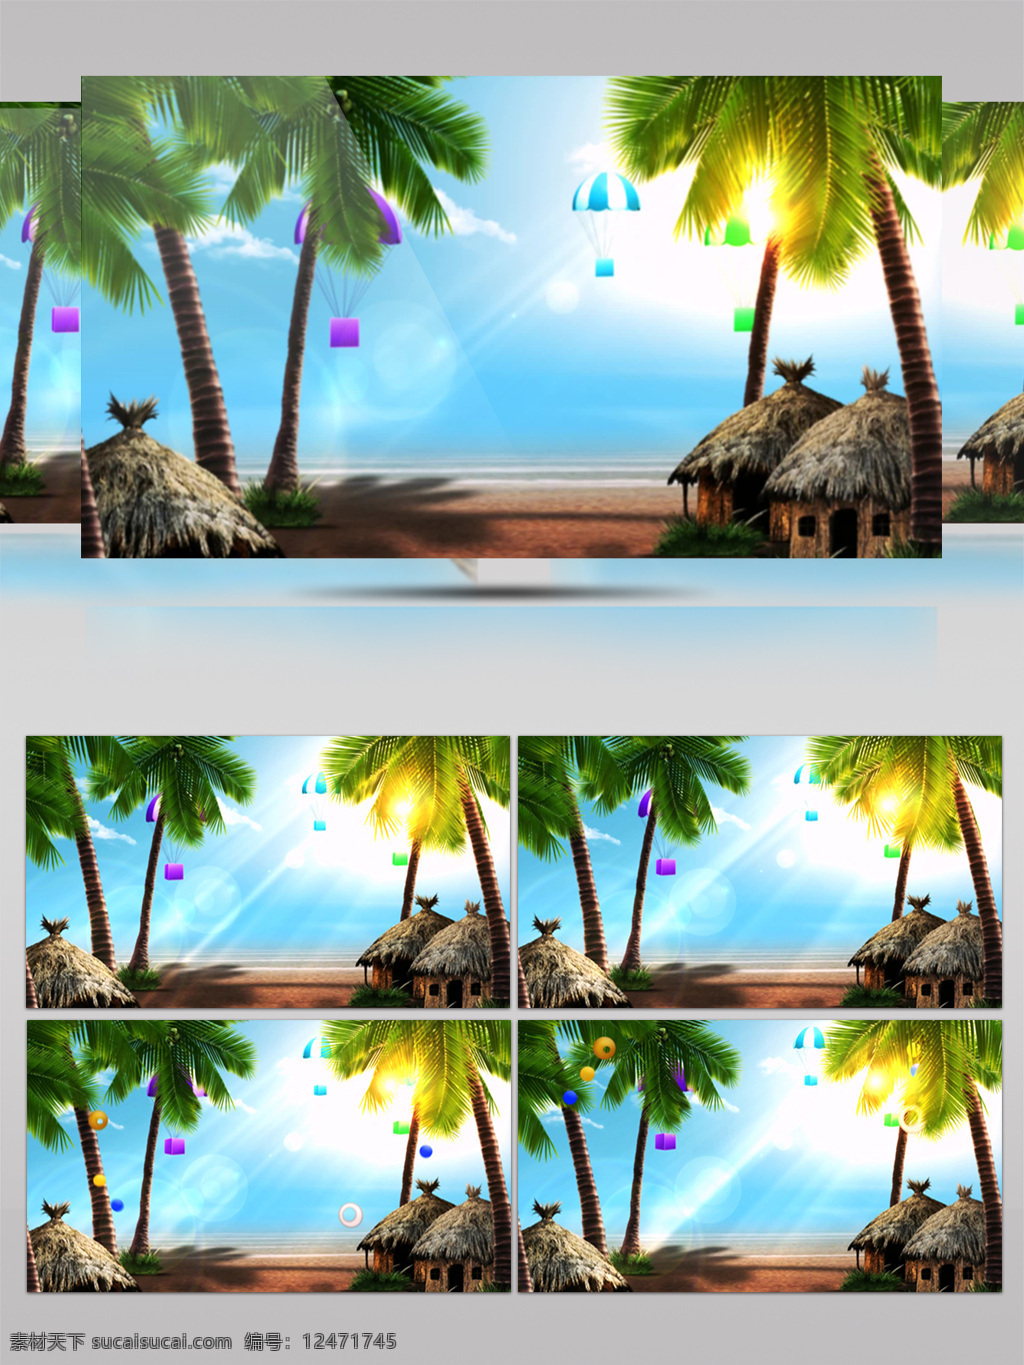 夏日 海滩 树 屋 视频 大海 阳光 热气球 树屋 椰树